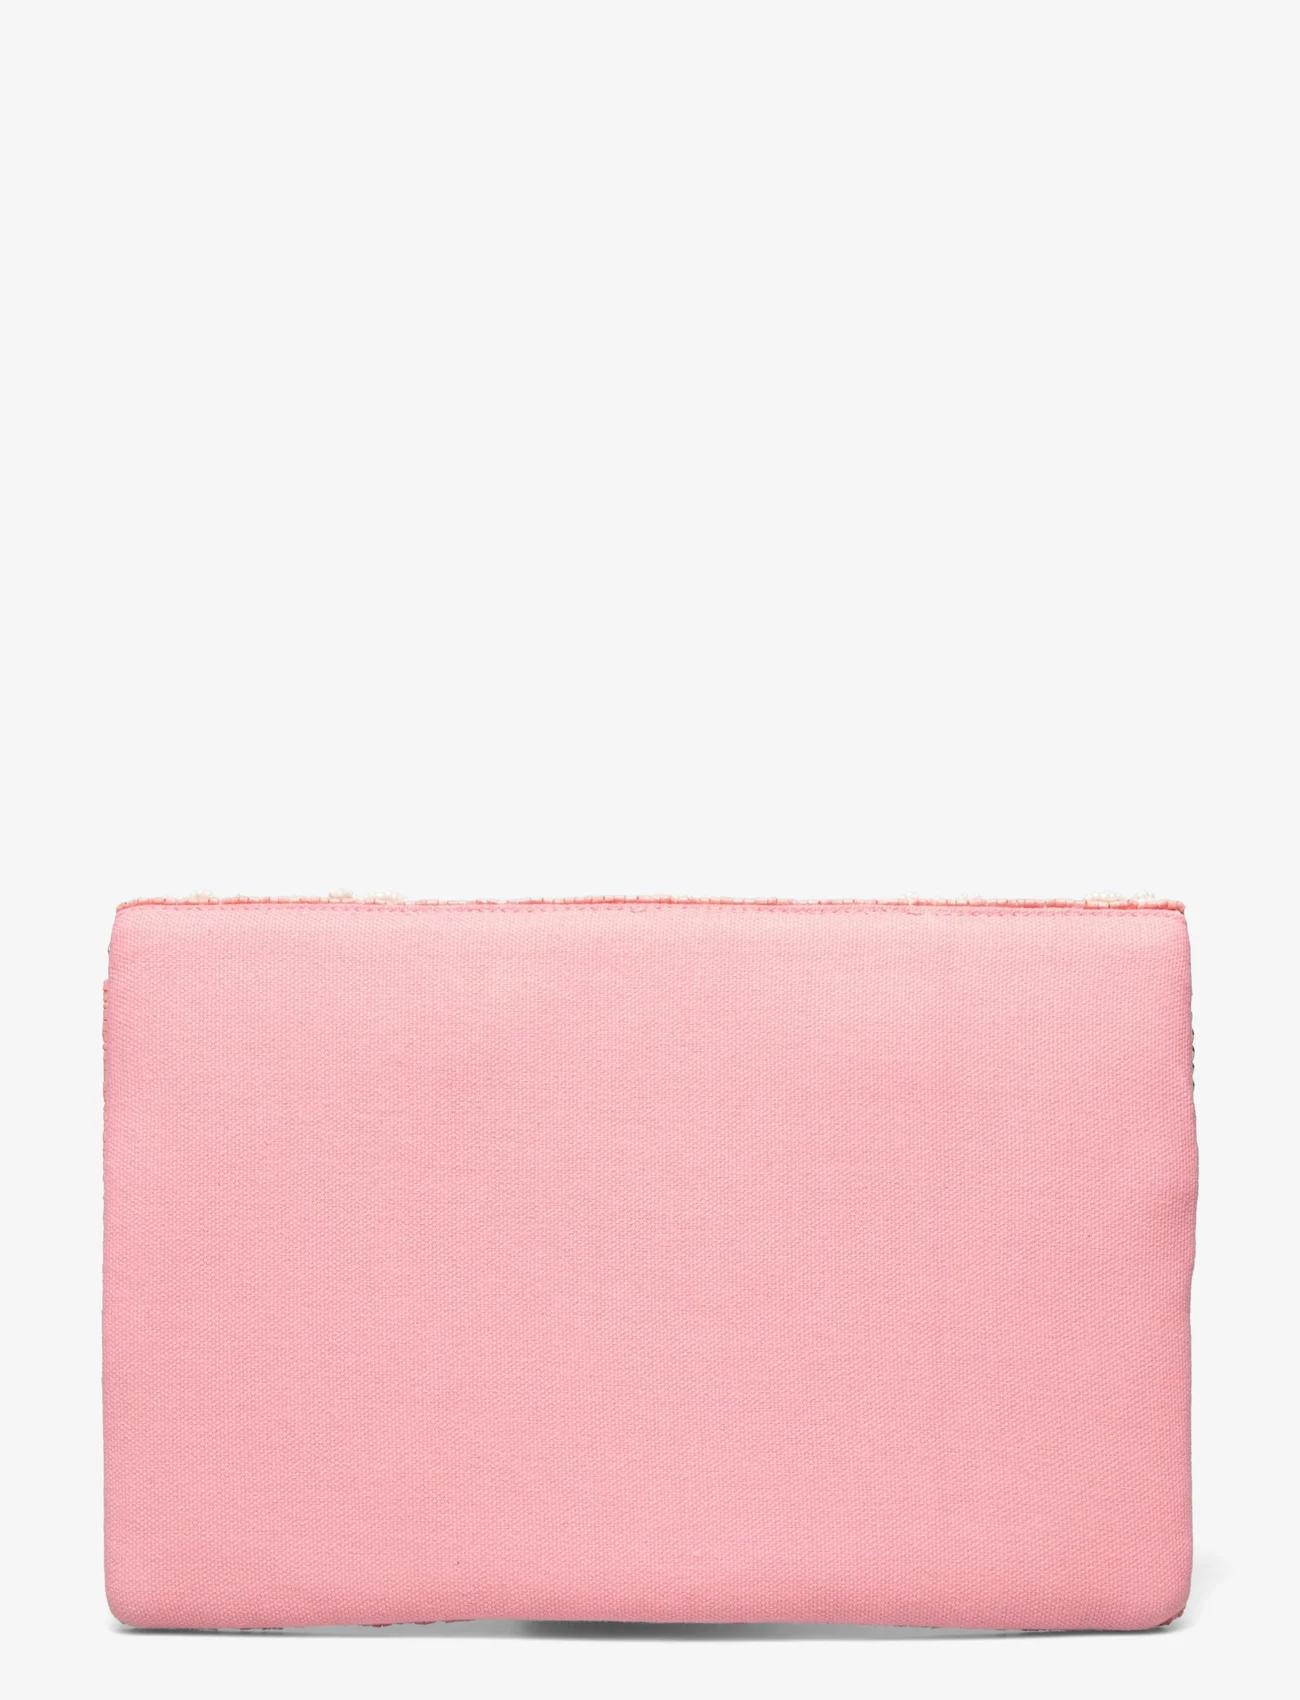 Pipol's Bazaar - Le Jardin Clutch Pink - feestelijke kleding voor outlet-prijzen - pink - 1